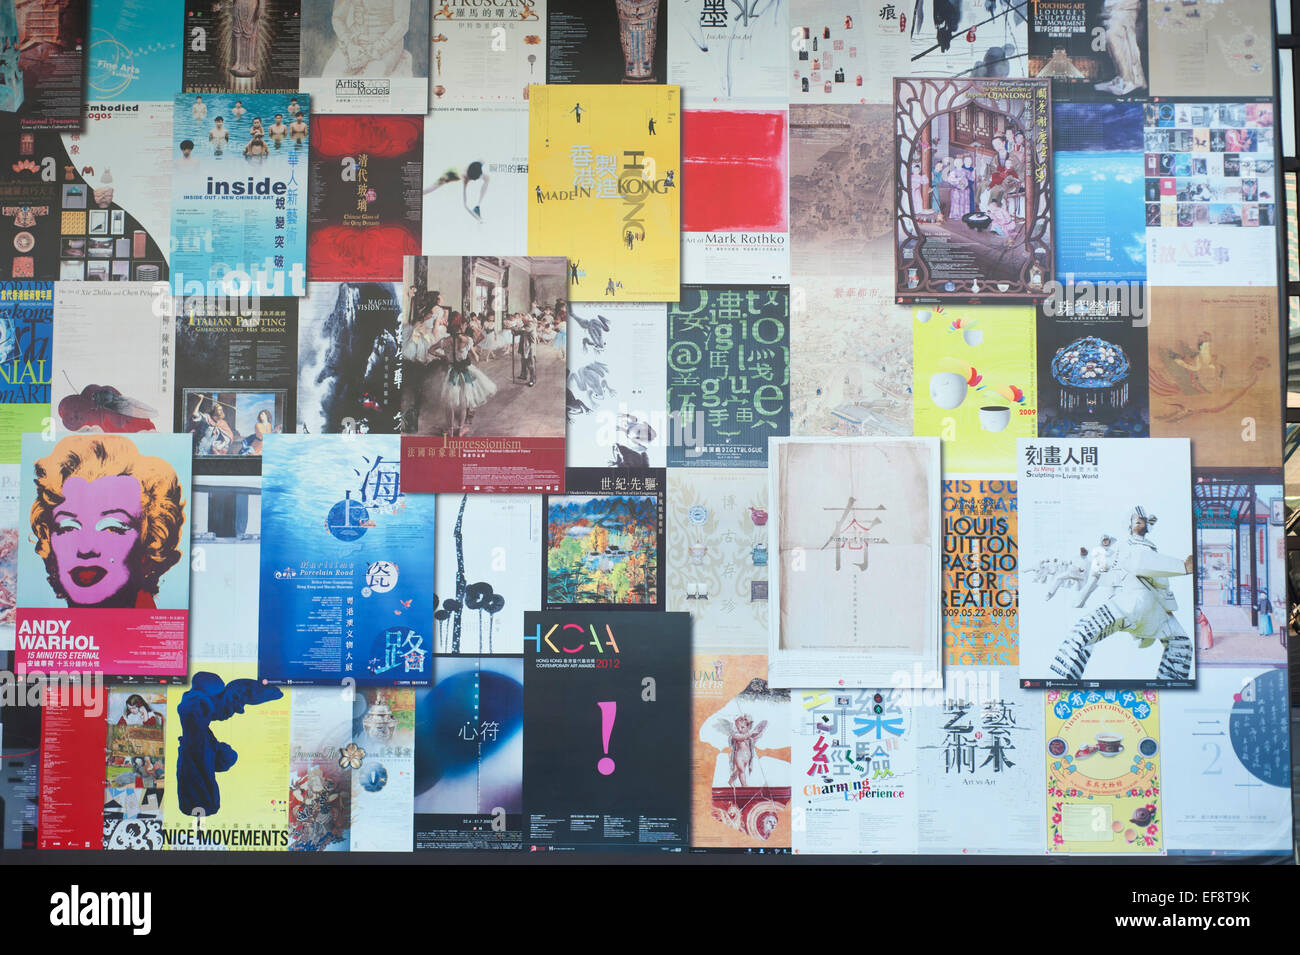 Hong Kong -  Posters on wall Stock Photo